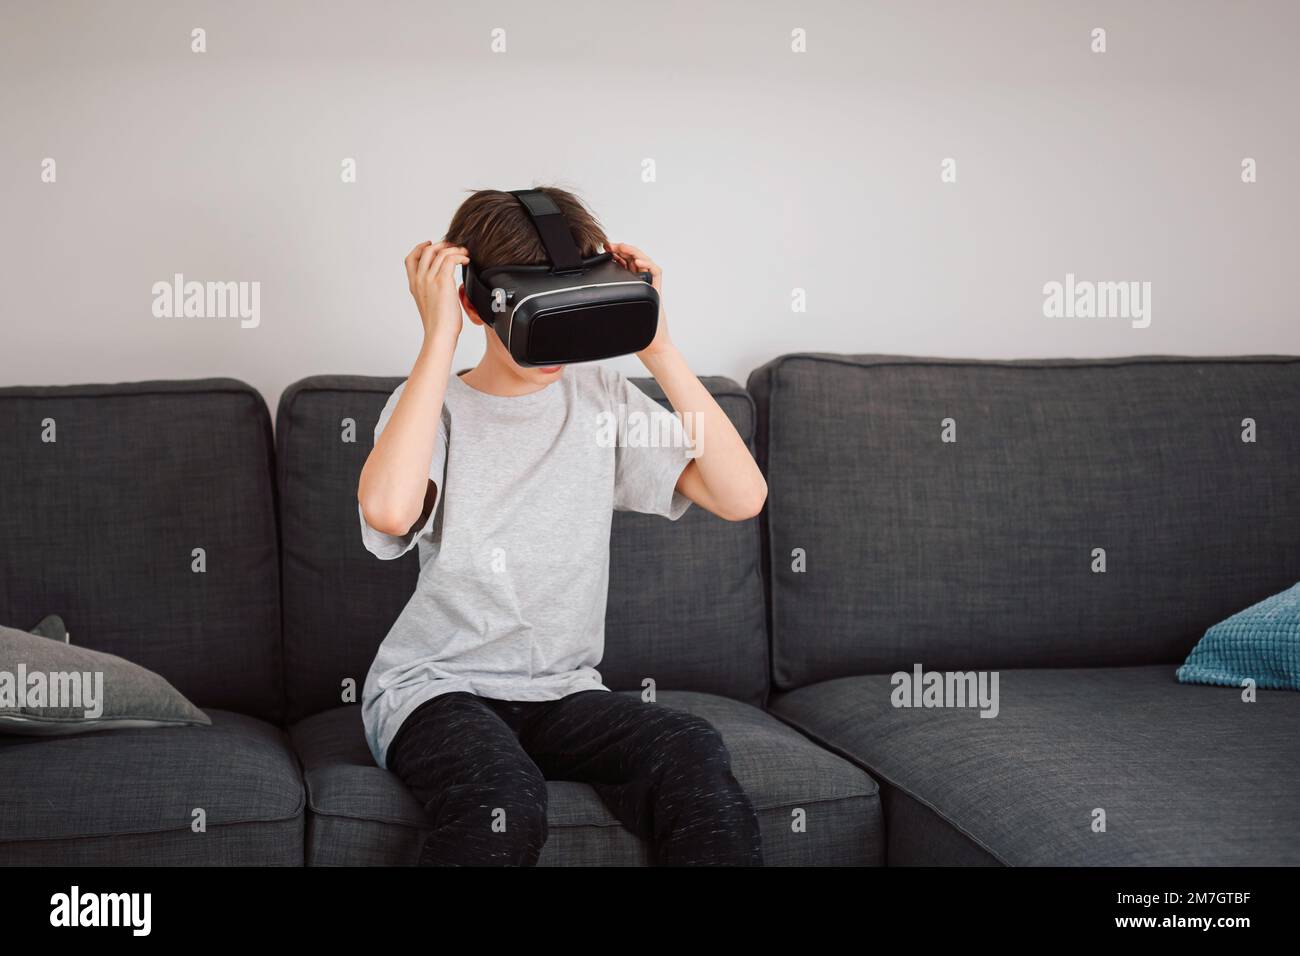 Männliches Kind aus Kaukasien, das ein Virtual-Reality-Headset aufsetzt und überrascht von einer virtuellen Welt aussieht Stockfoto